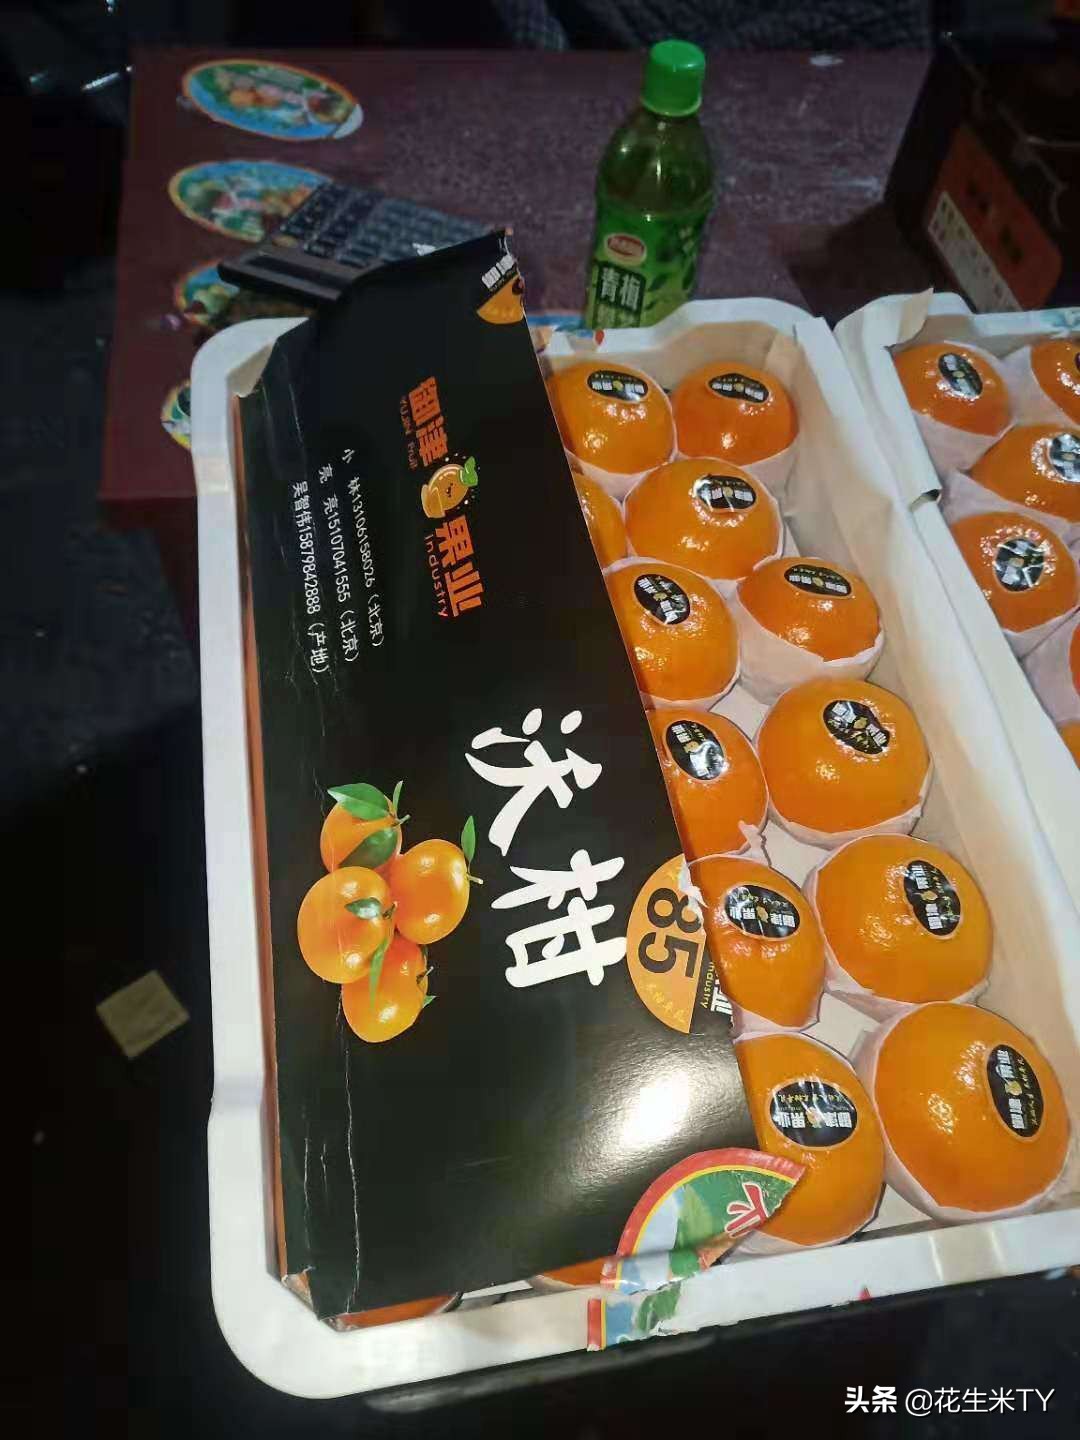 成都蒙阳市场3月28号部分果蔬实时批发价格(价格好农民好)